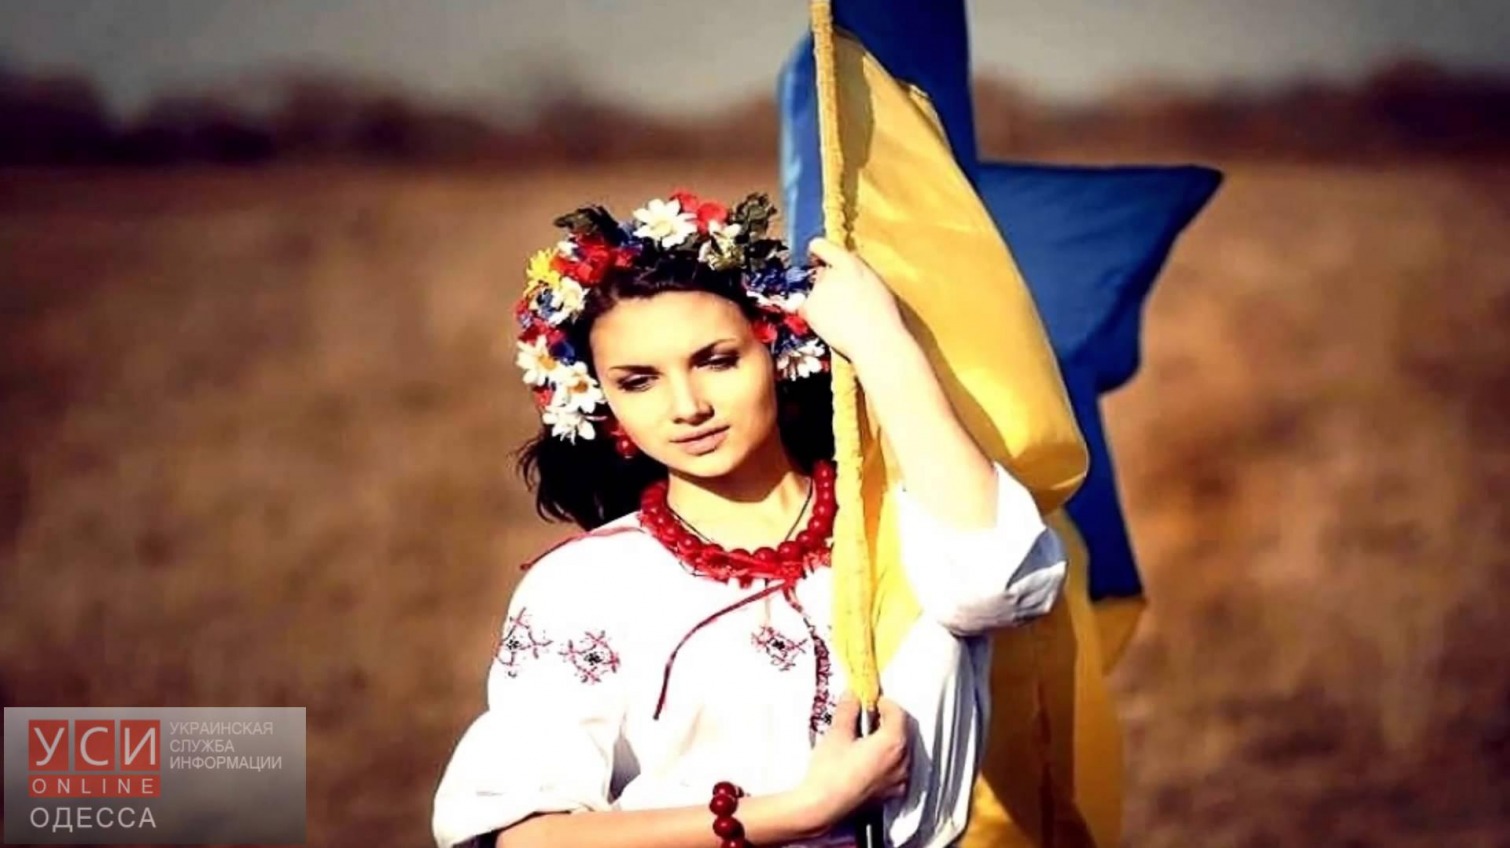 Одесситки присоединились к борьбе за мир в Украине «фото»